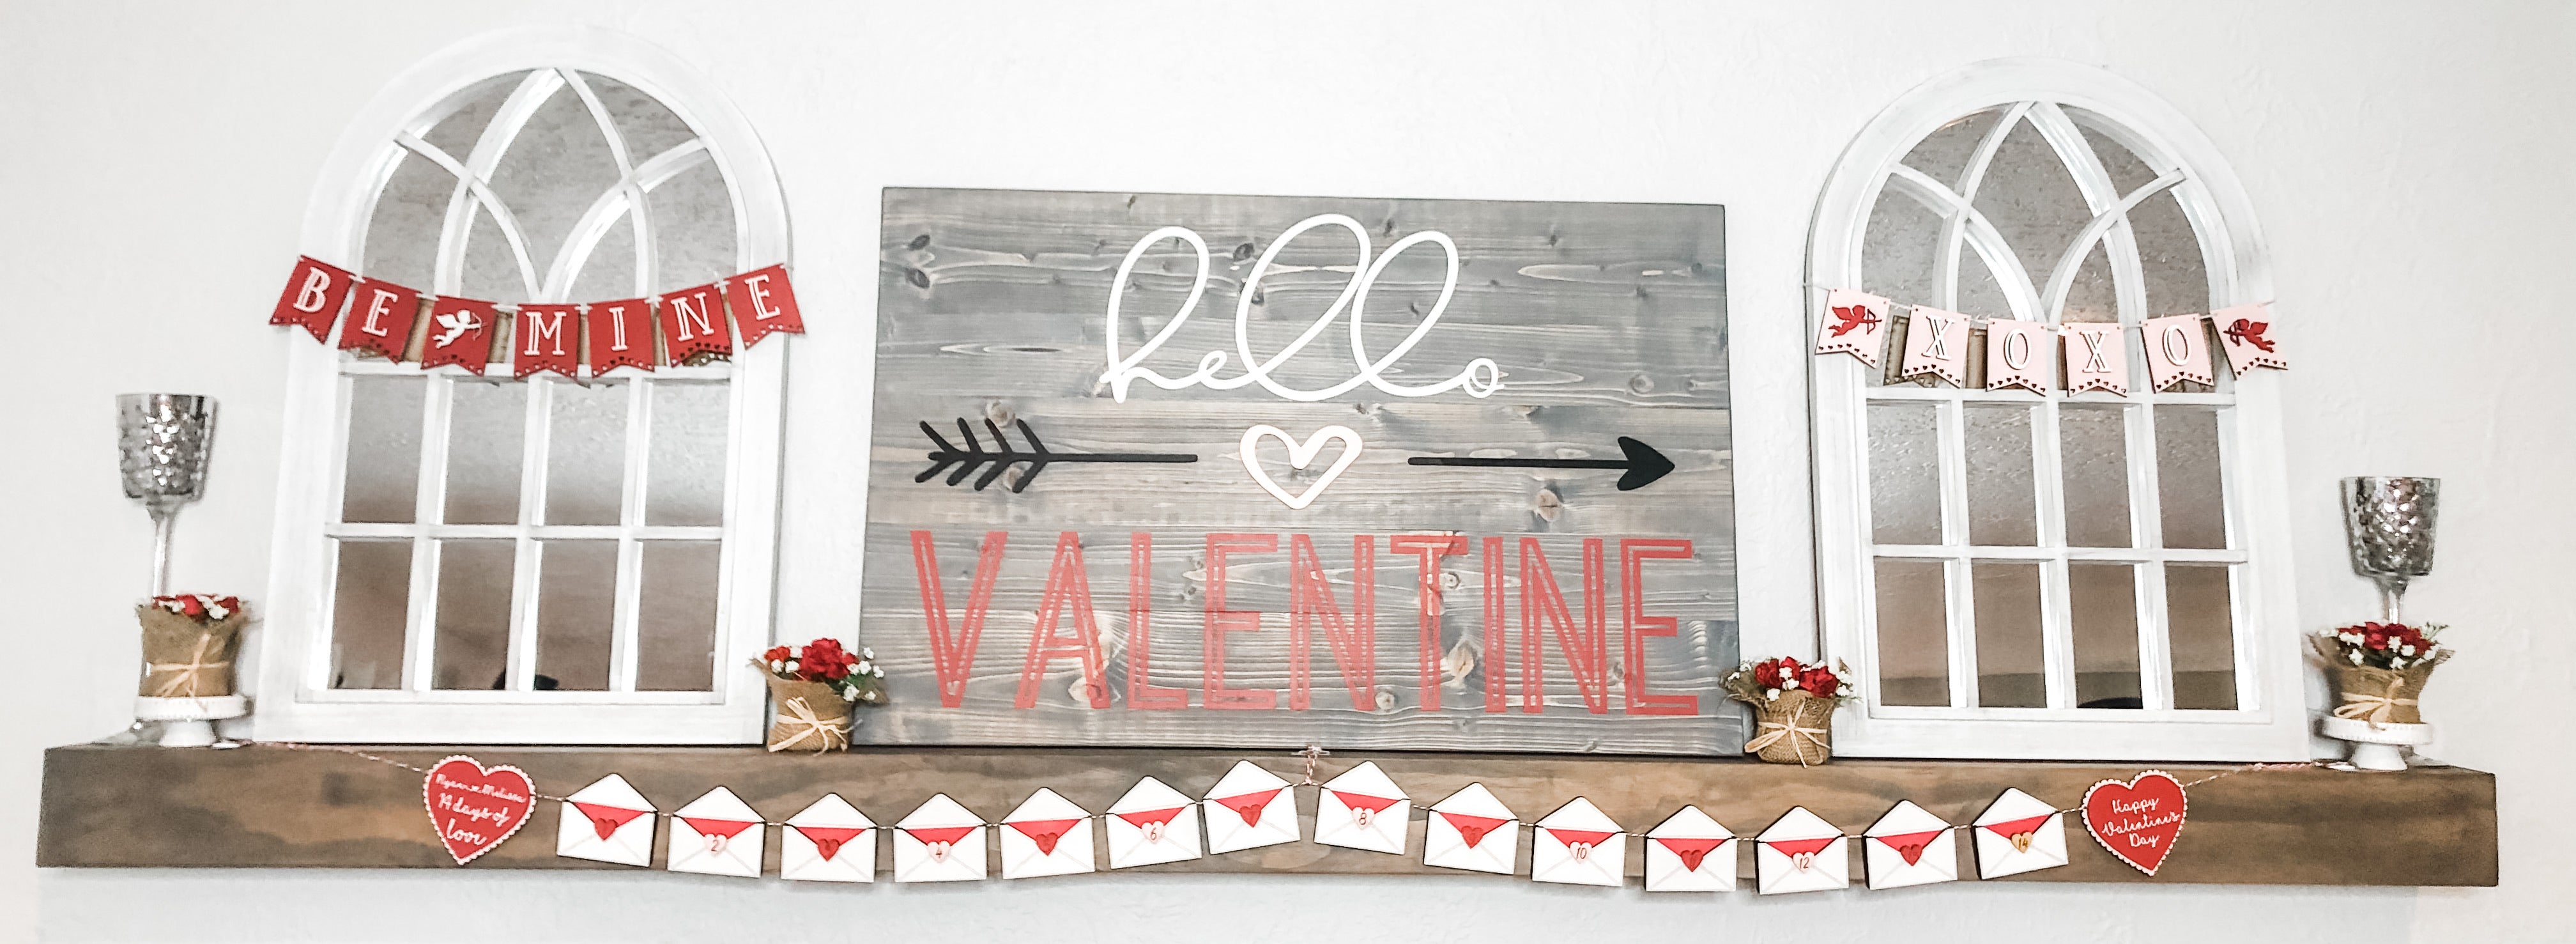 14 Days of love Valentines Banner